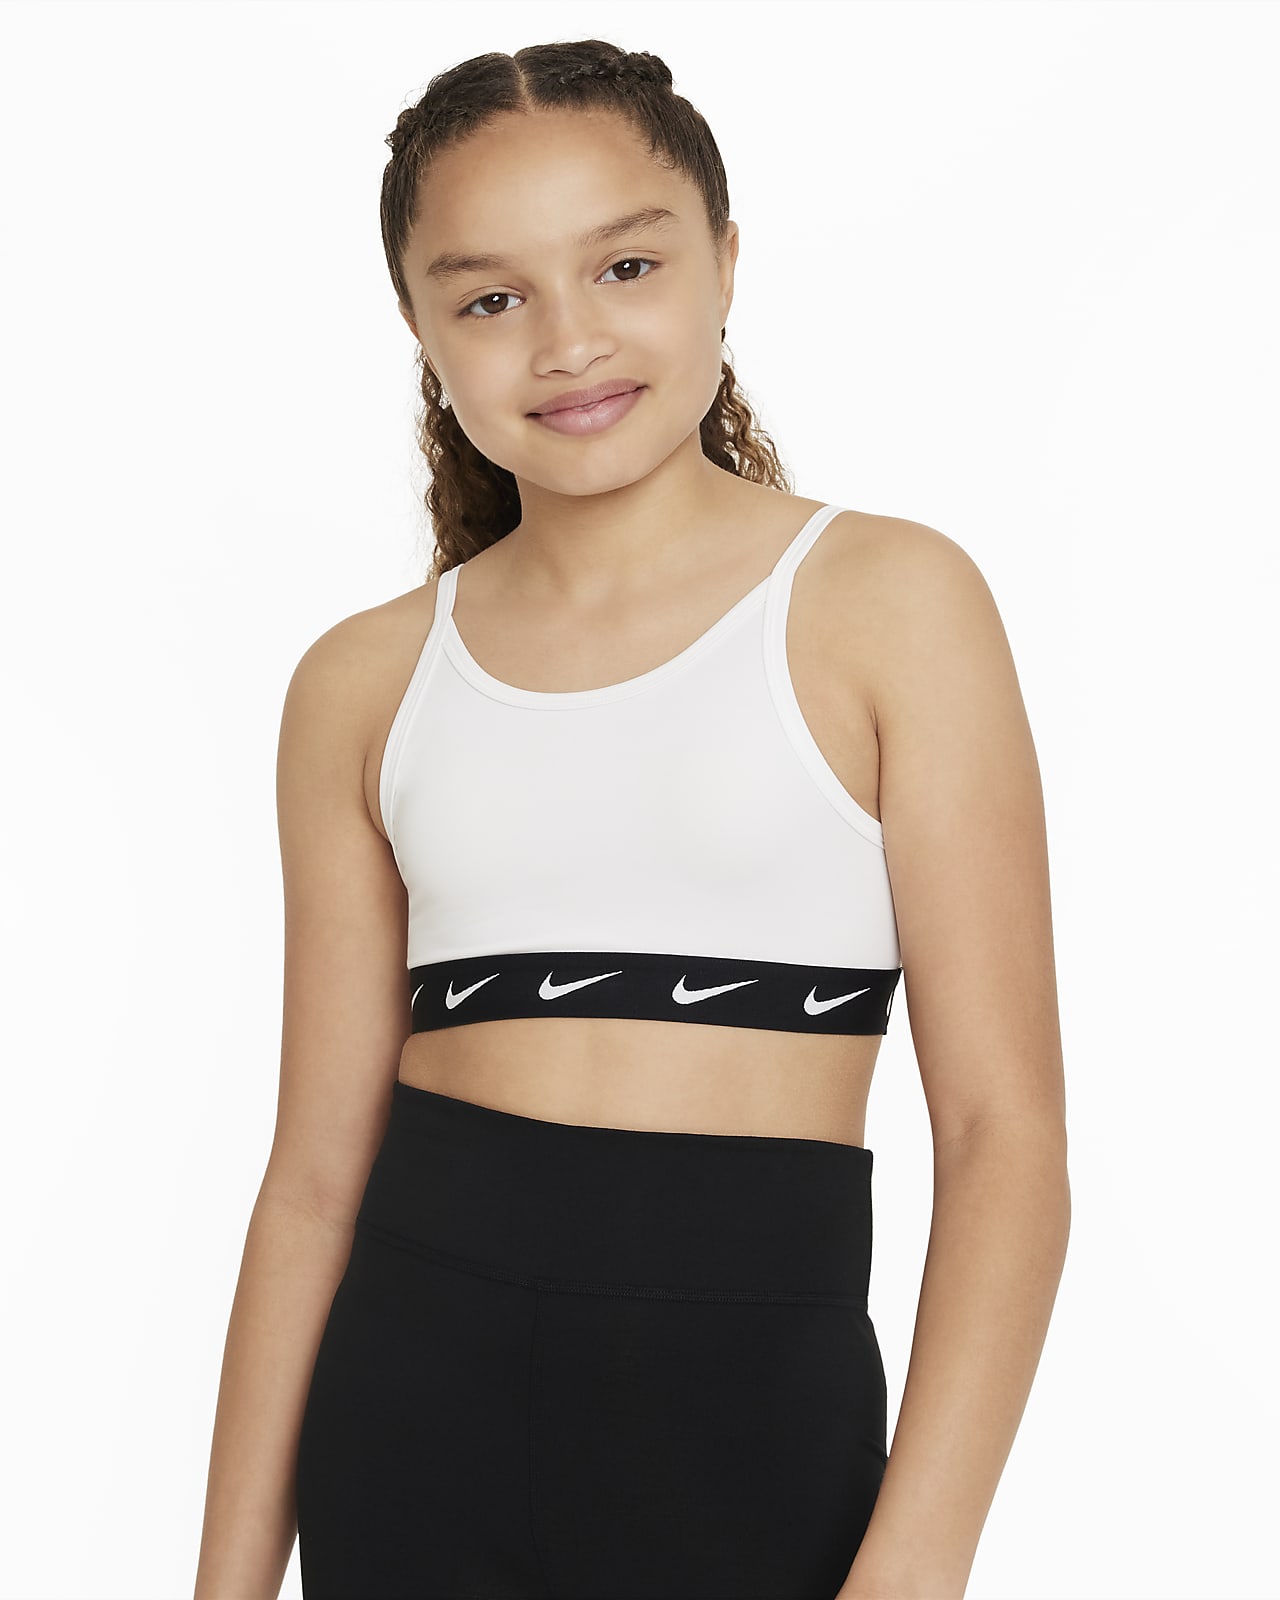 Αθλητικός στηθόδεσμος Nike One για μεγάλα κορίτσια